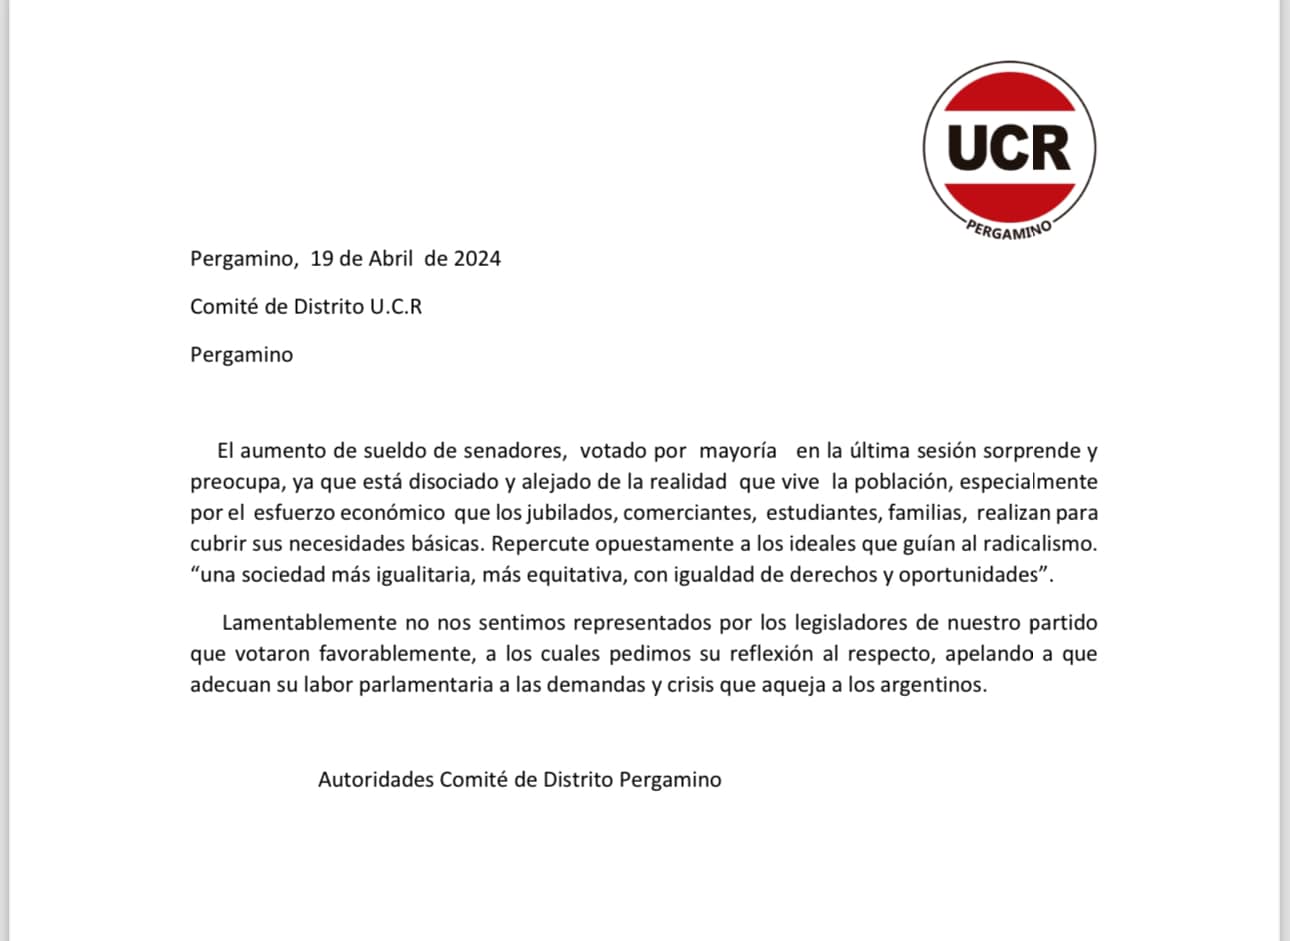 El comité de distrito de la Unión Cívica Radical de Pergamino emitió un comunicado